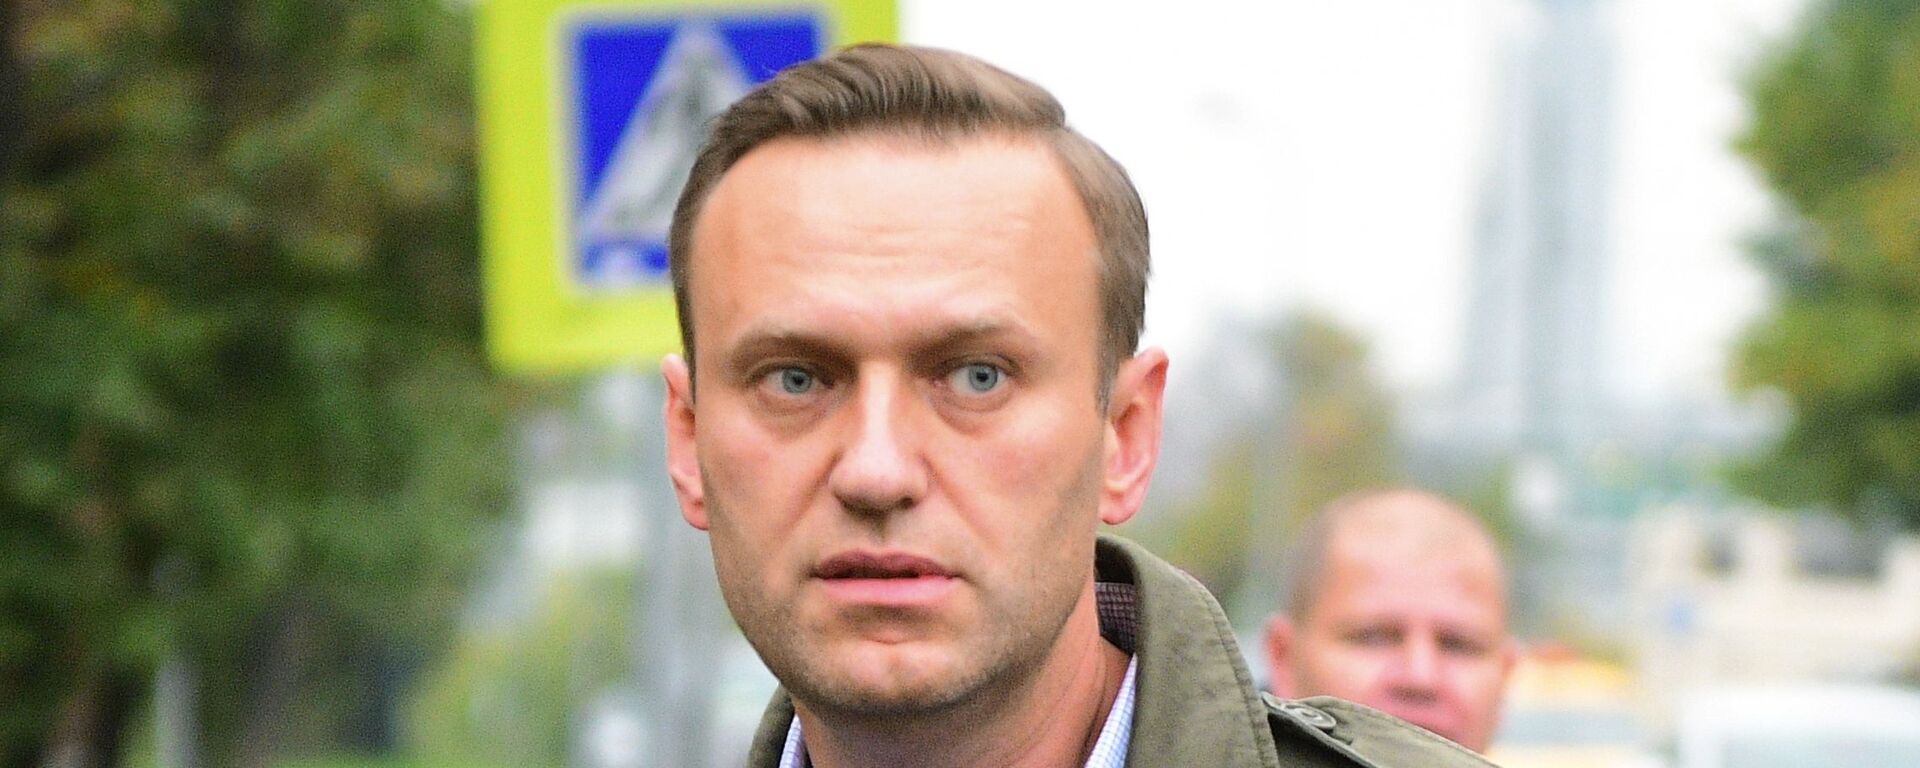 Рассмотрение административного дела в отношении Алексея Навального в Симоновском суде - Sputnik Latvija, 1920, 05.03.2021